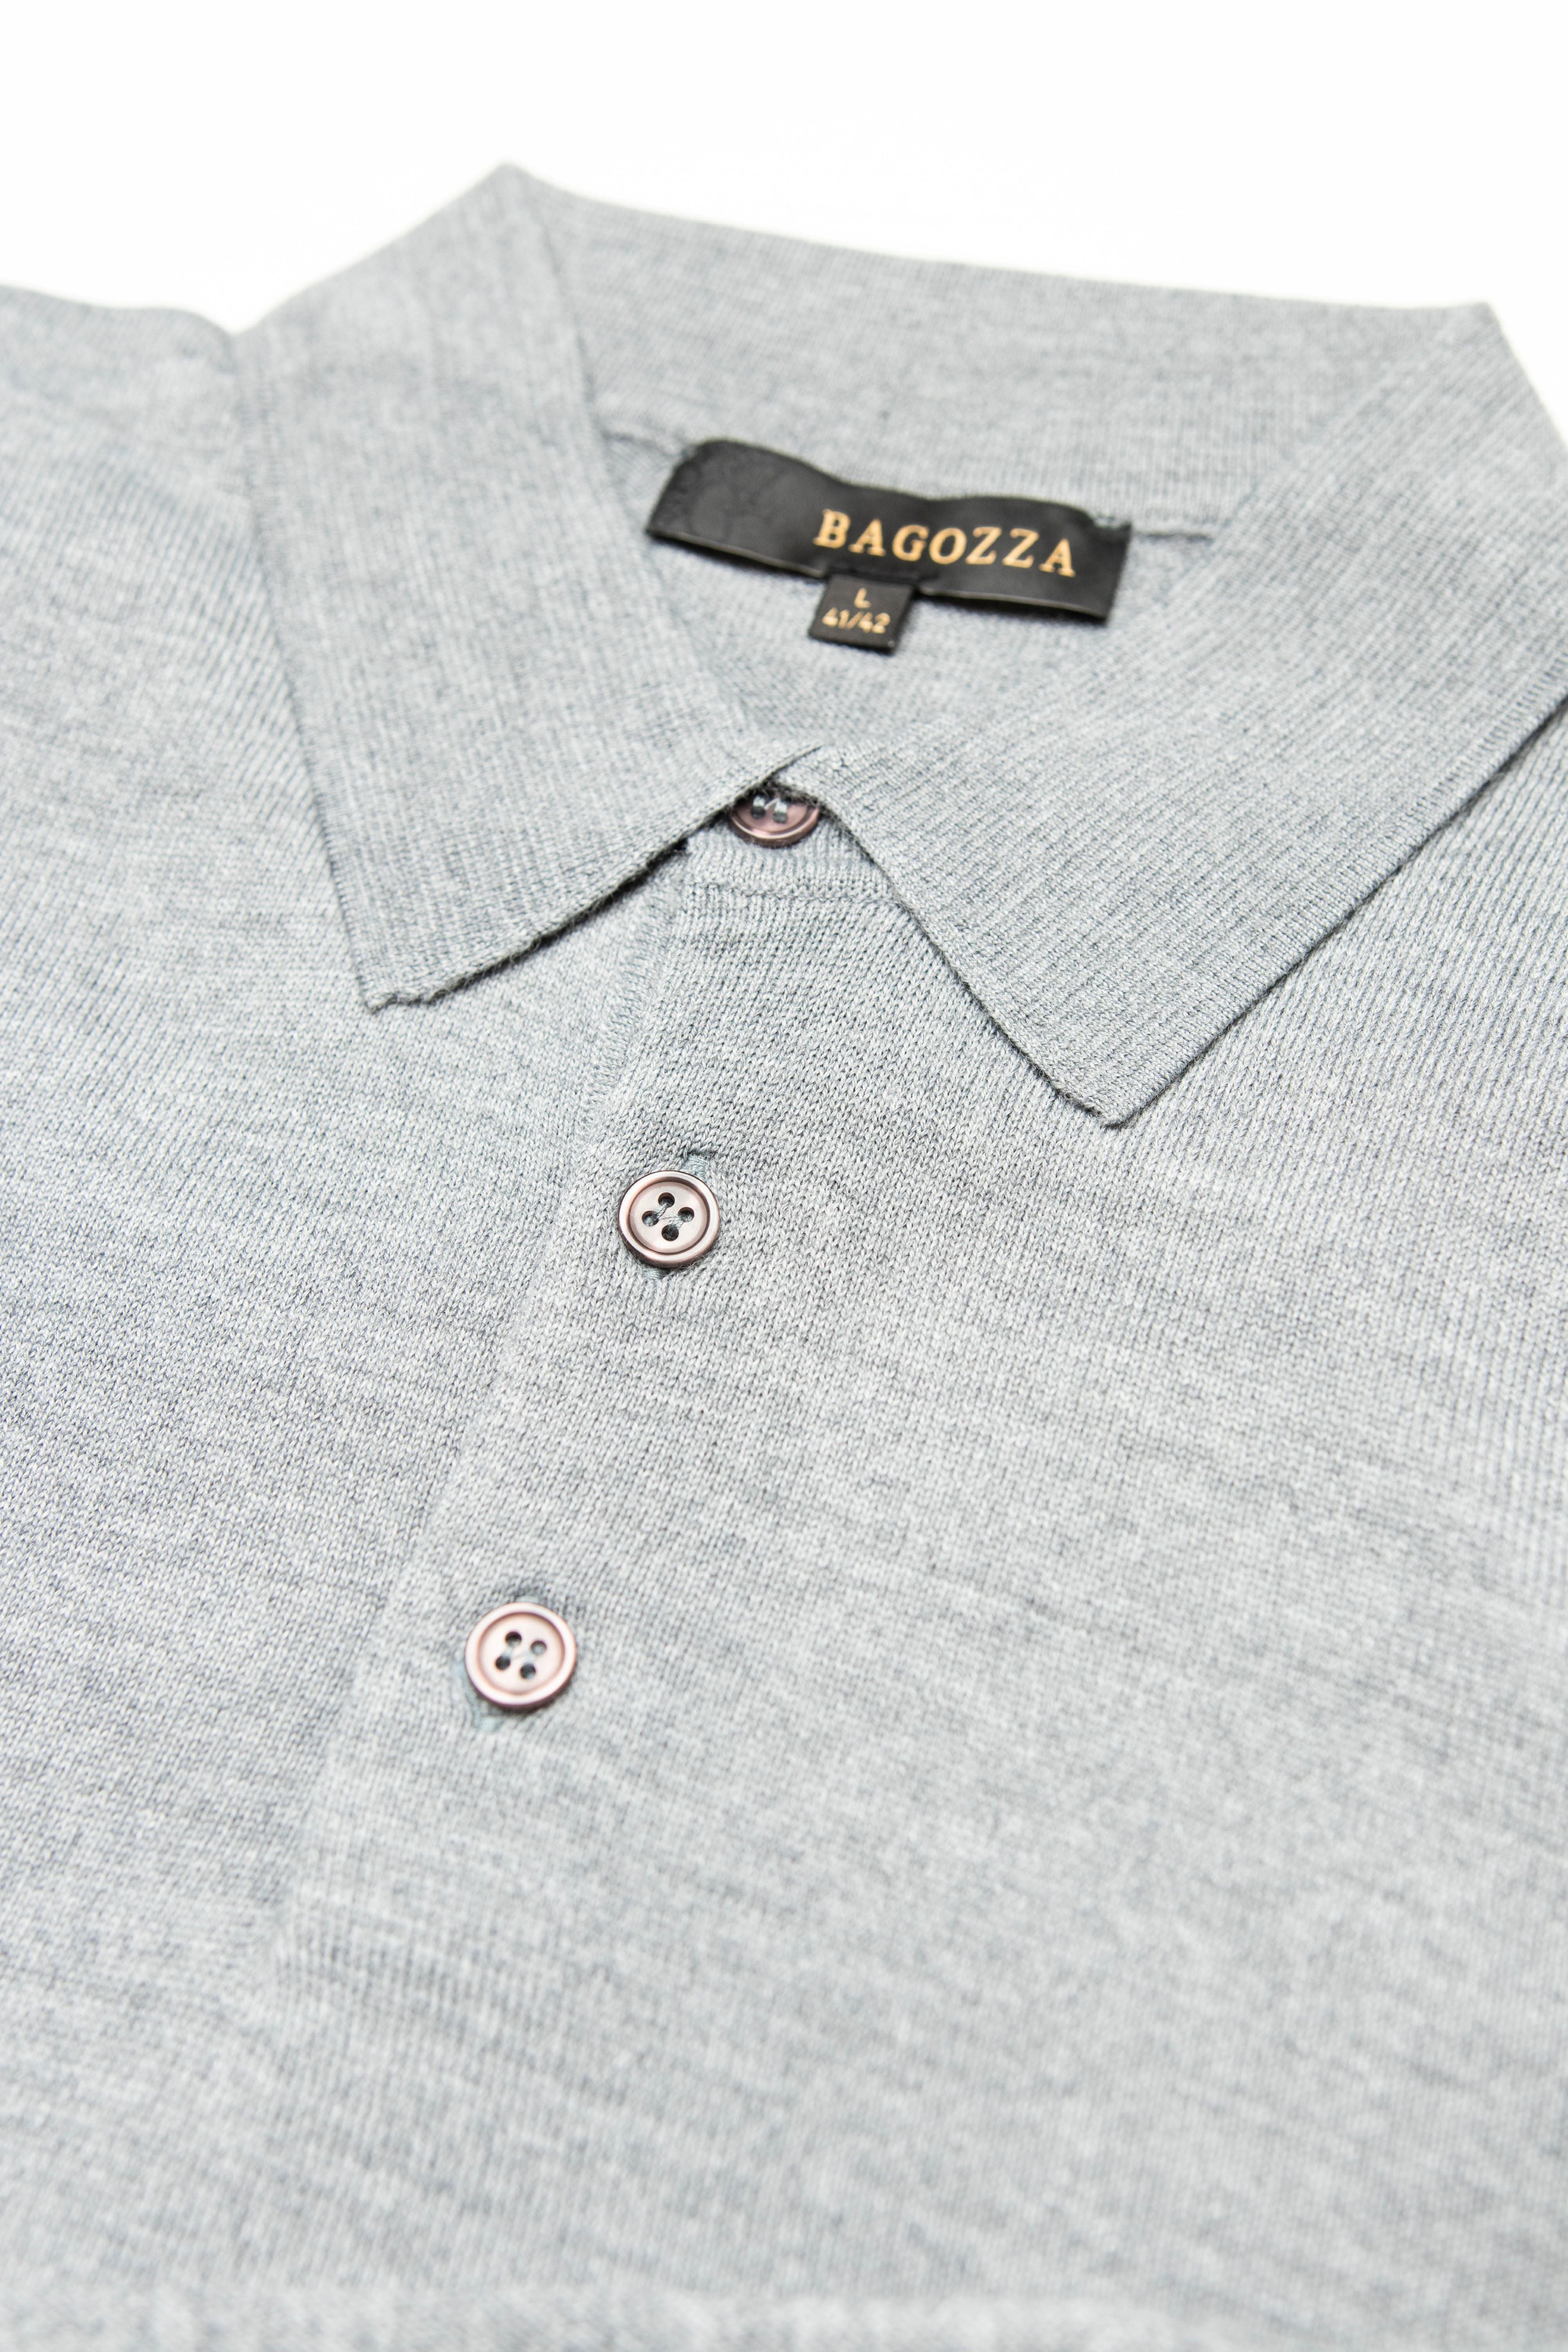 Polo Shirts for Men | Online | Bagozza Americas